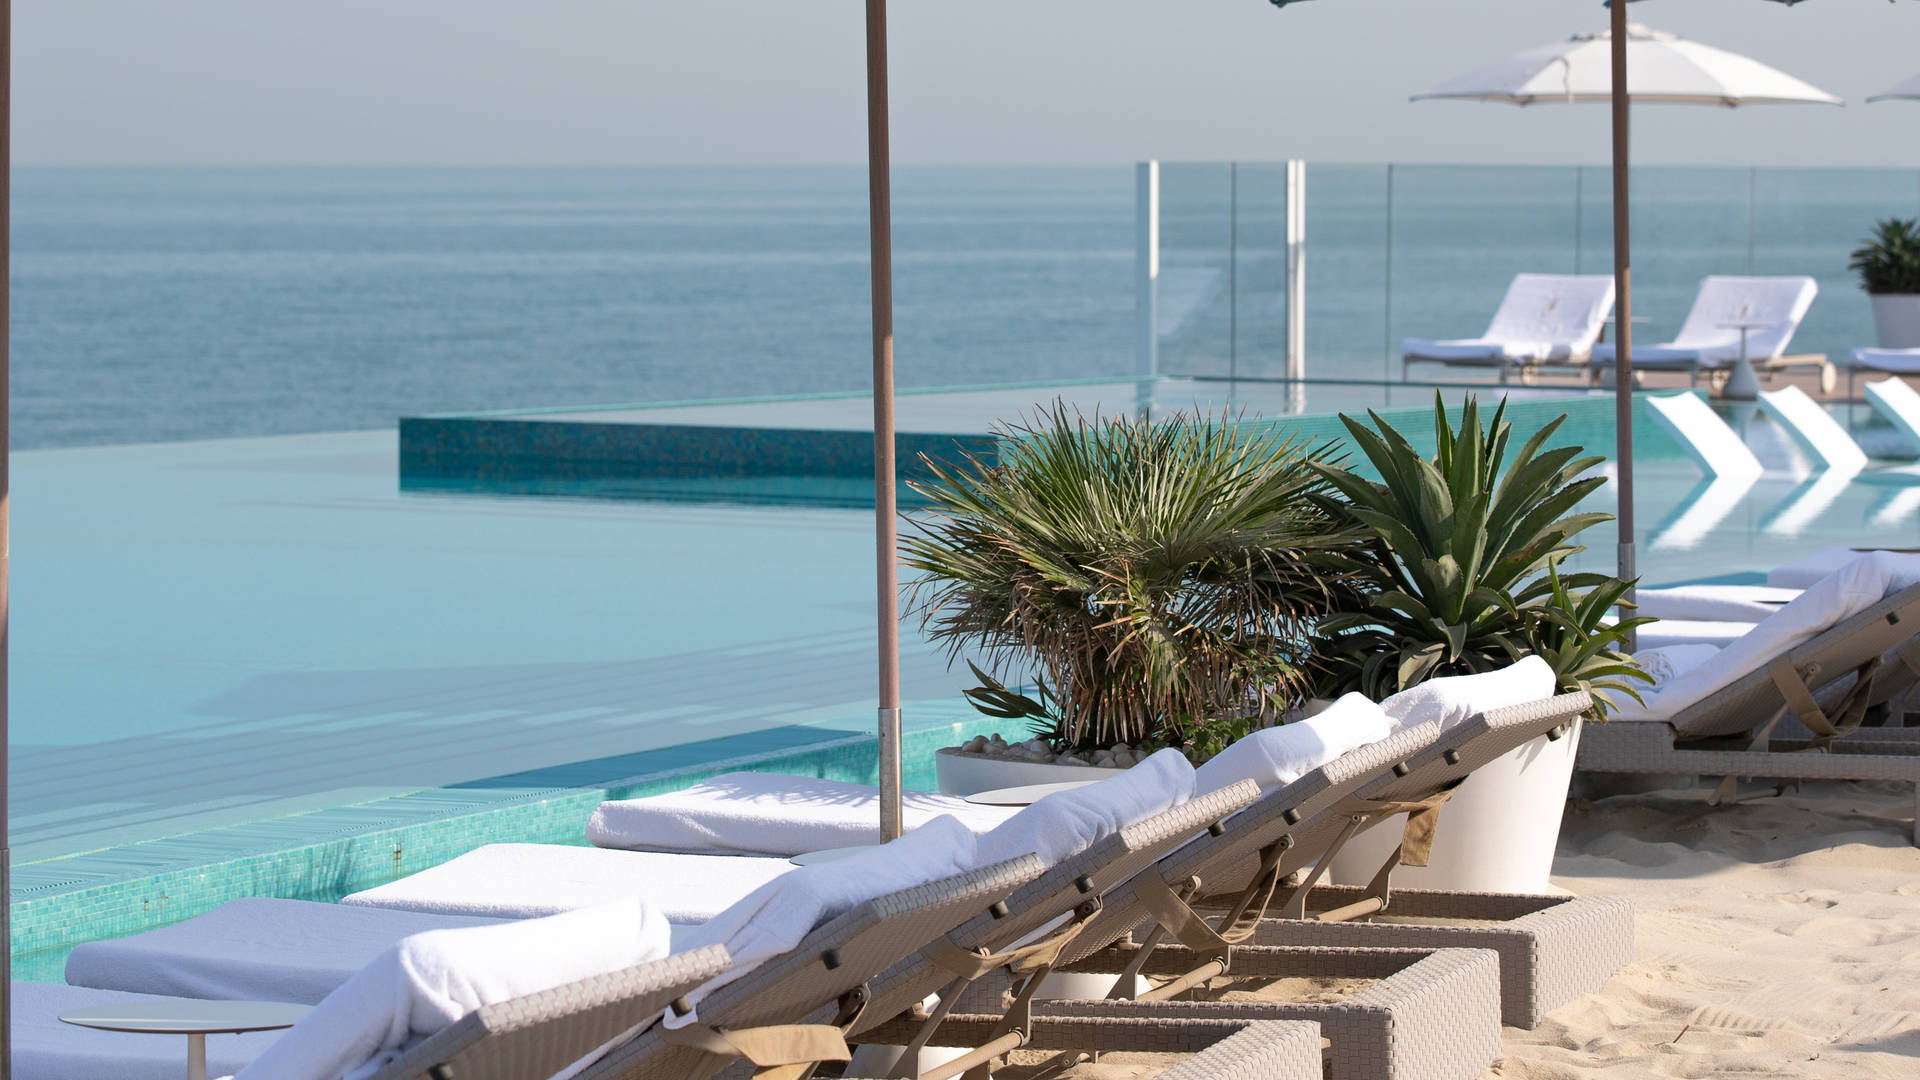 The Terrace Beach Club Burj Al Arab